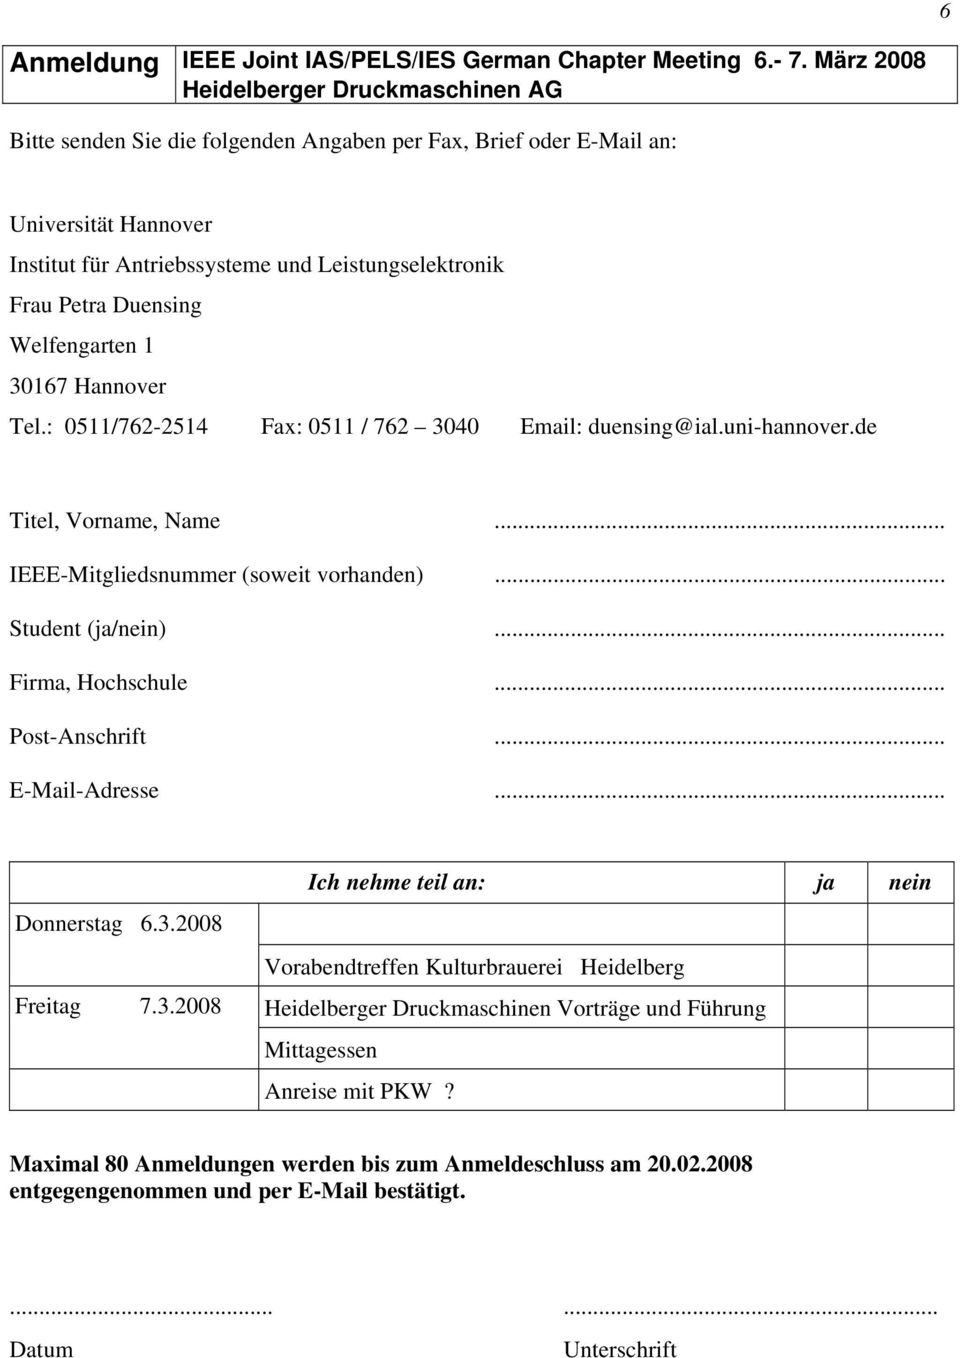 Hannover Tel.: 0511/762-2514 Fax: 0511 / 762 3040 Email: duensing@ial.uni-hannover.de Titel, Vorname, Name... IEEE-Mitgliedsnummer (soweit vorhanden)... Student (ja/nein)... Firma, Hochschule.